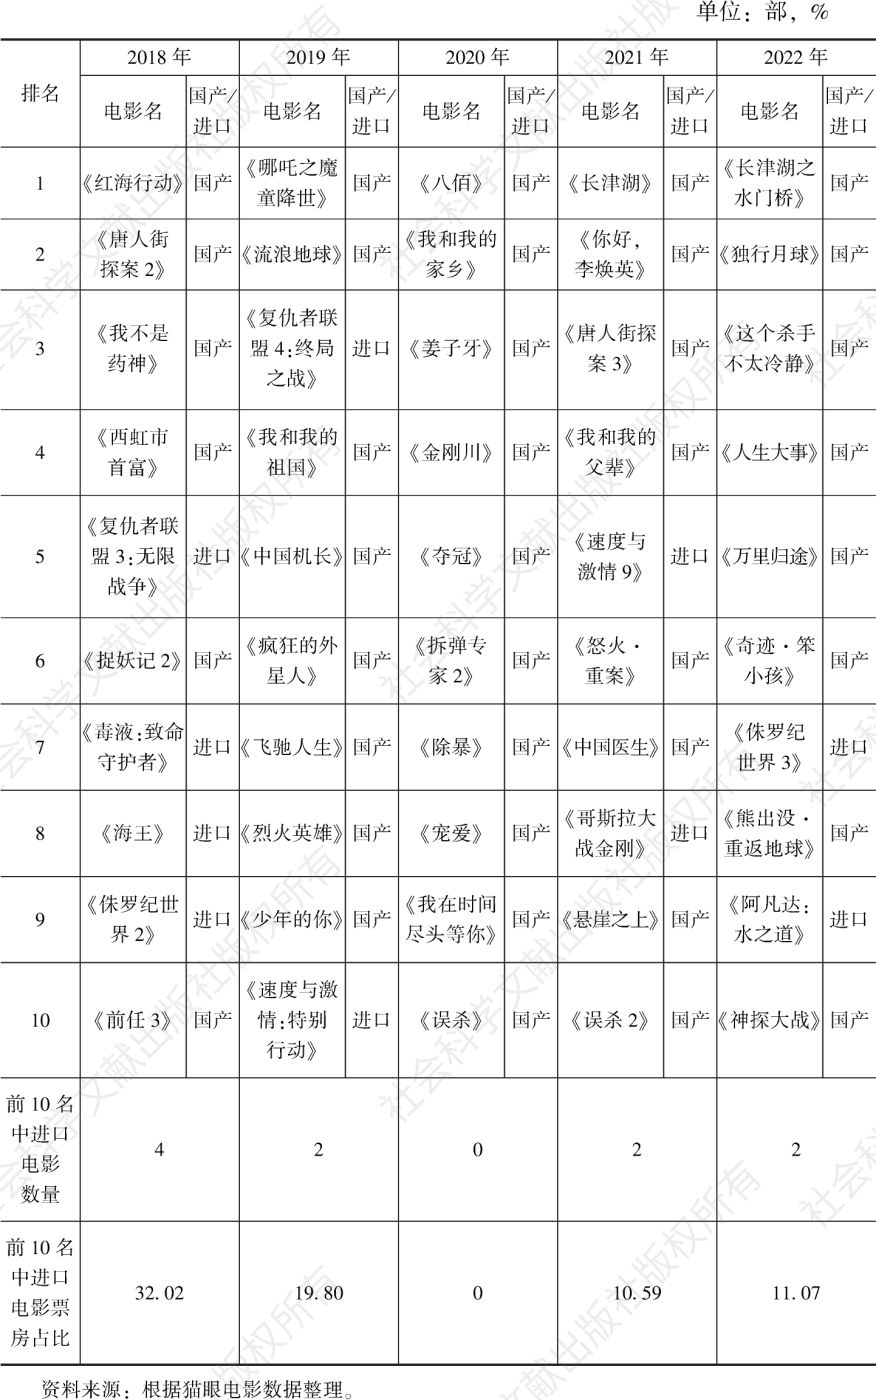 表1 2018～2022年中国电影票房排行榜前10名中进口电影的情况